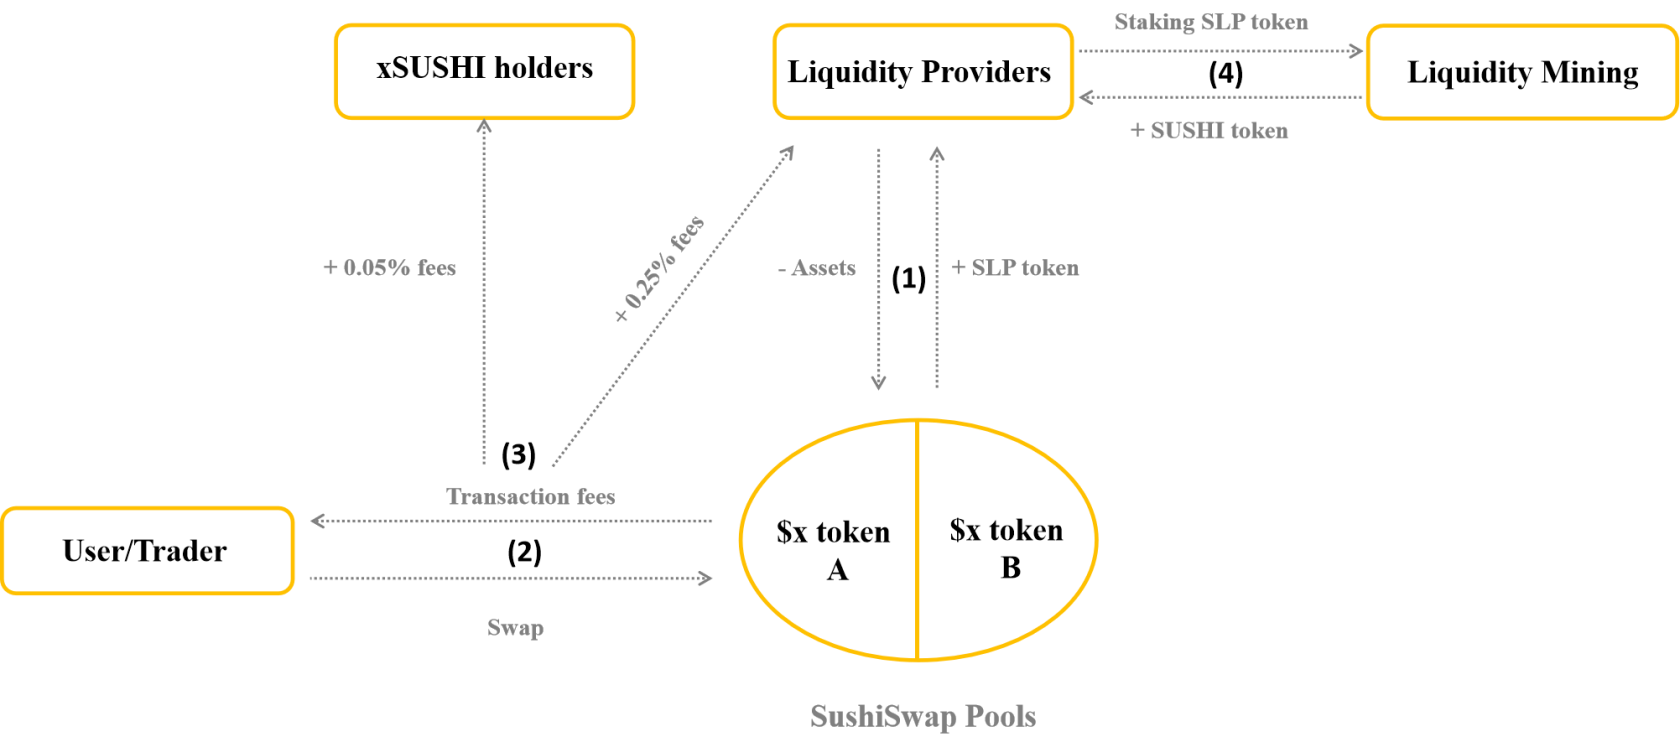 تحليل نموذج التشغيل SushiSwap - نموذج متعدد المنتجات